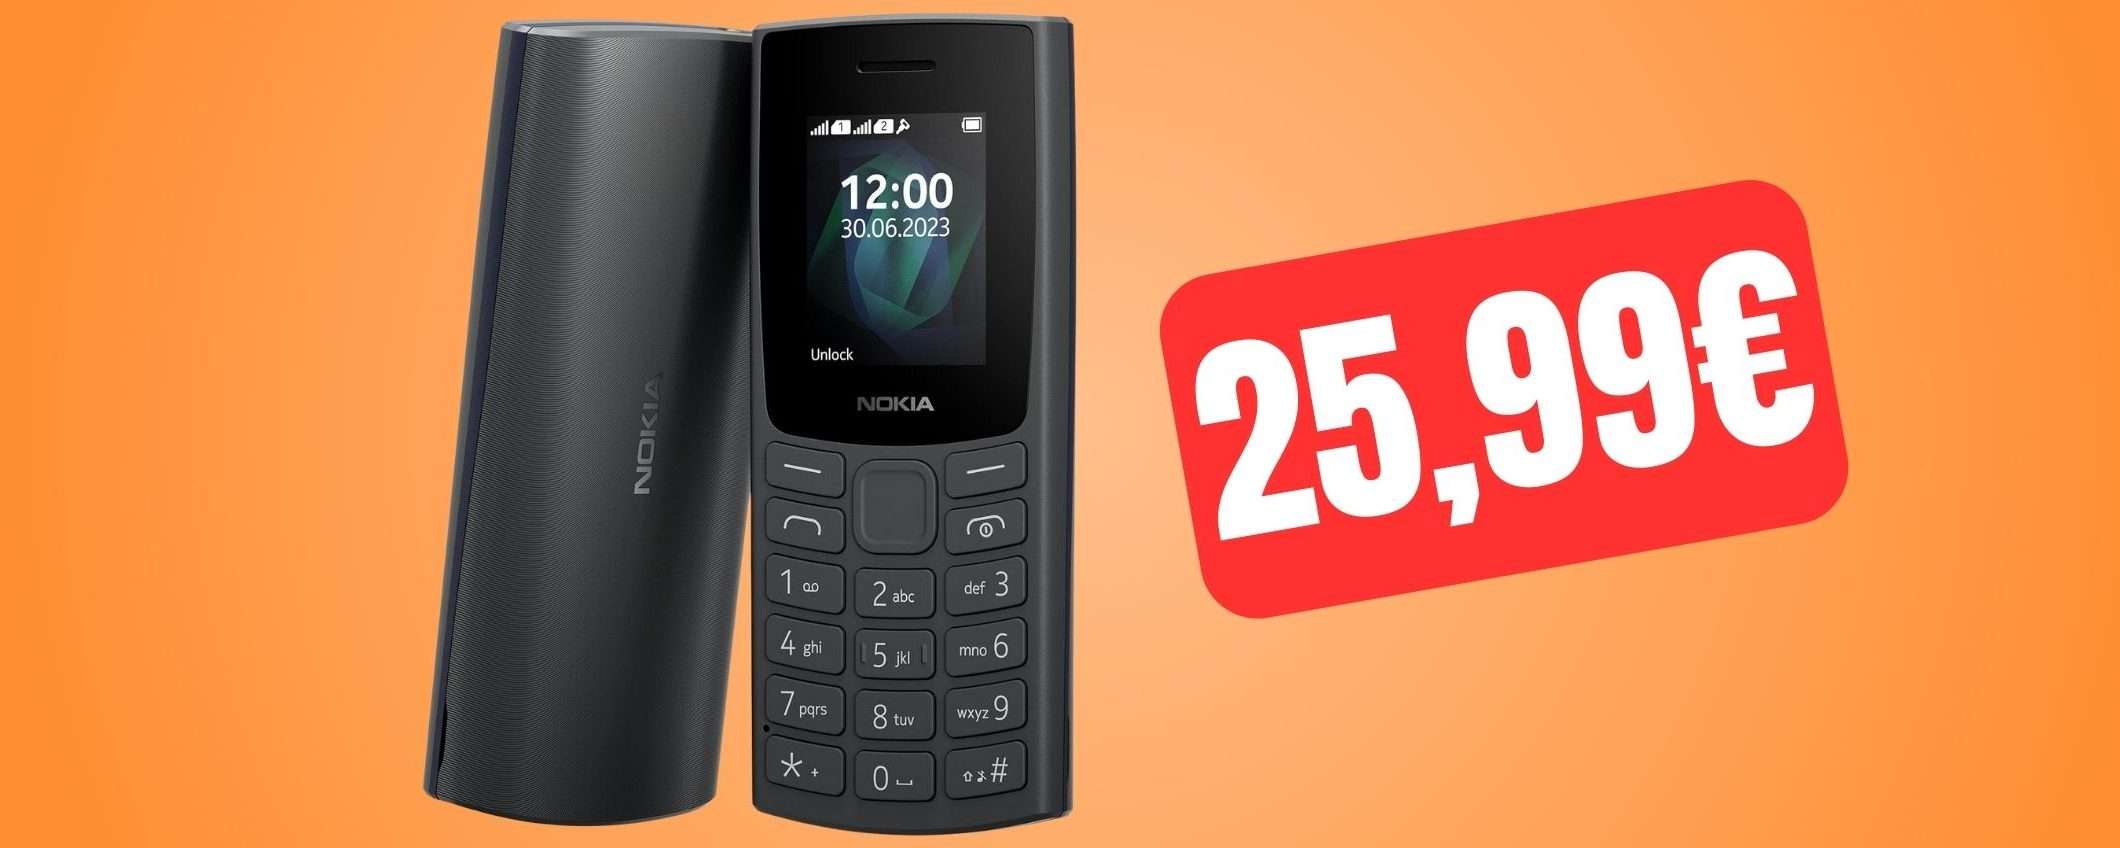 Nokia 105: un cellulare vecchio stile a PREZZO REGALO su Amazon